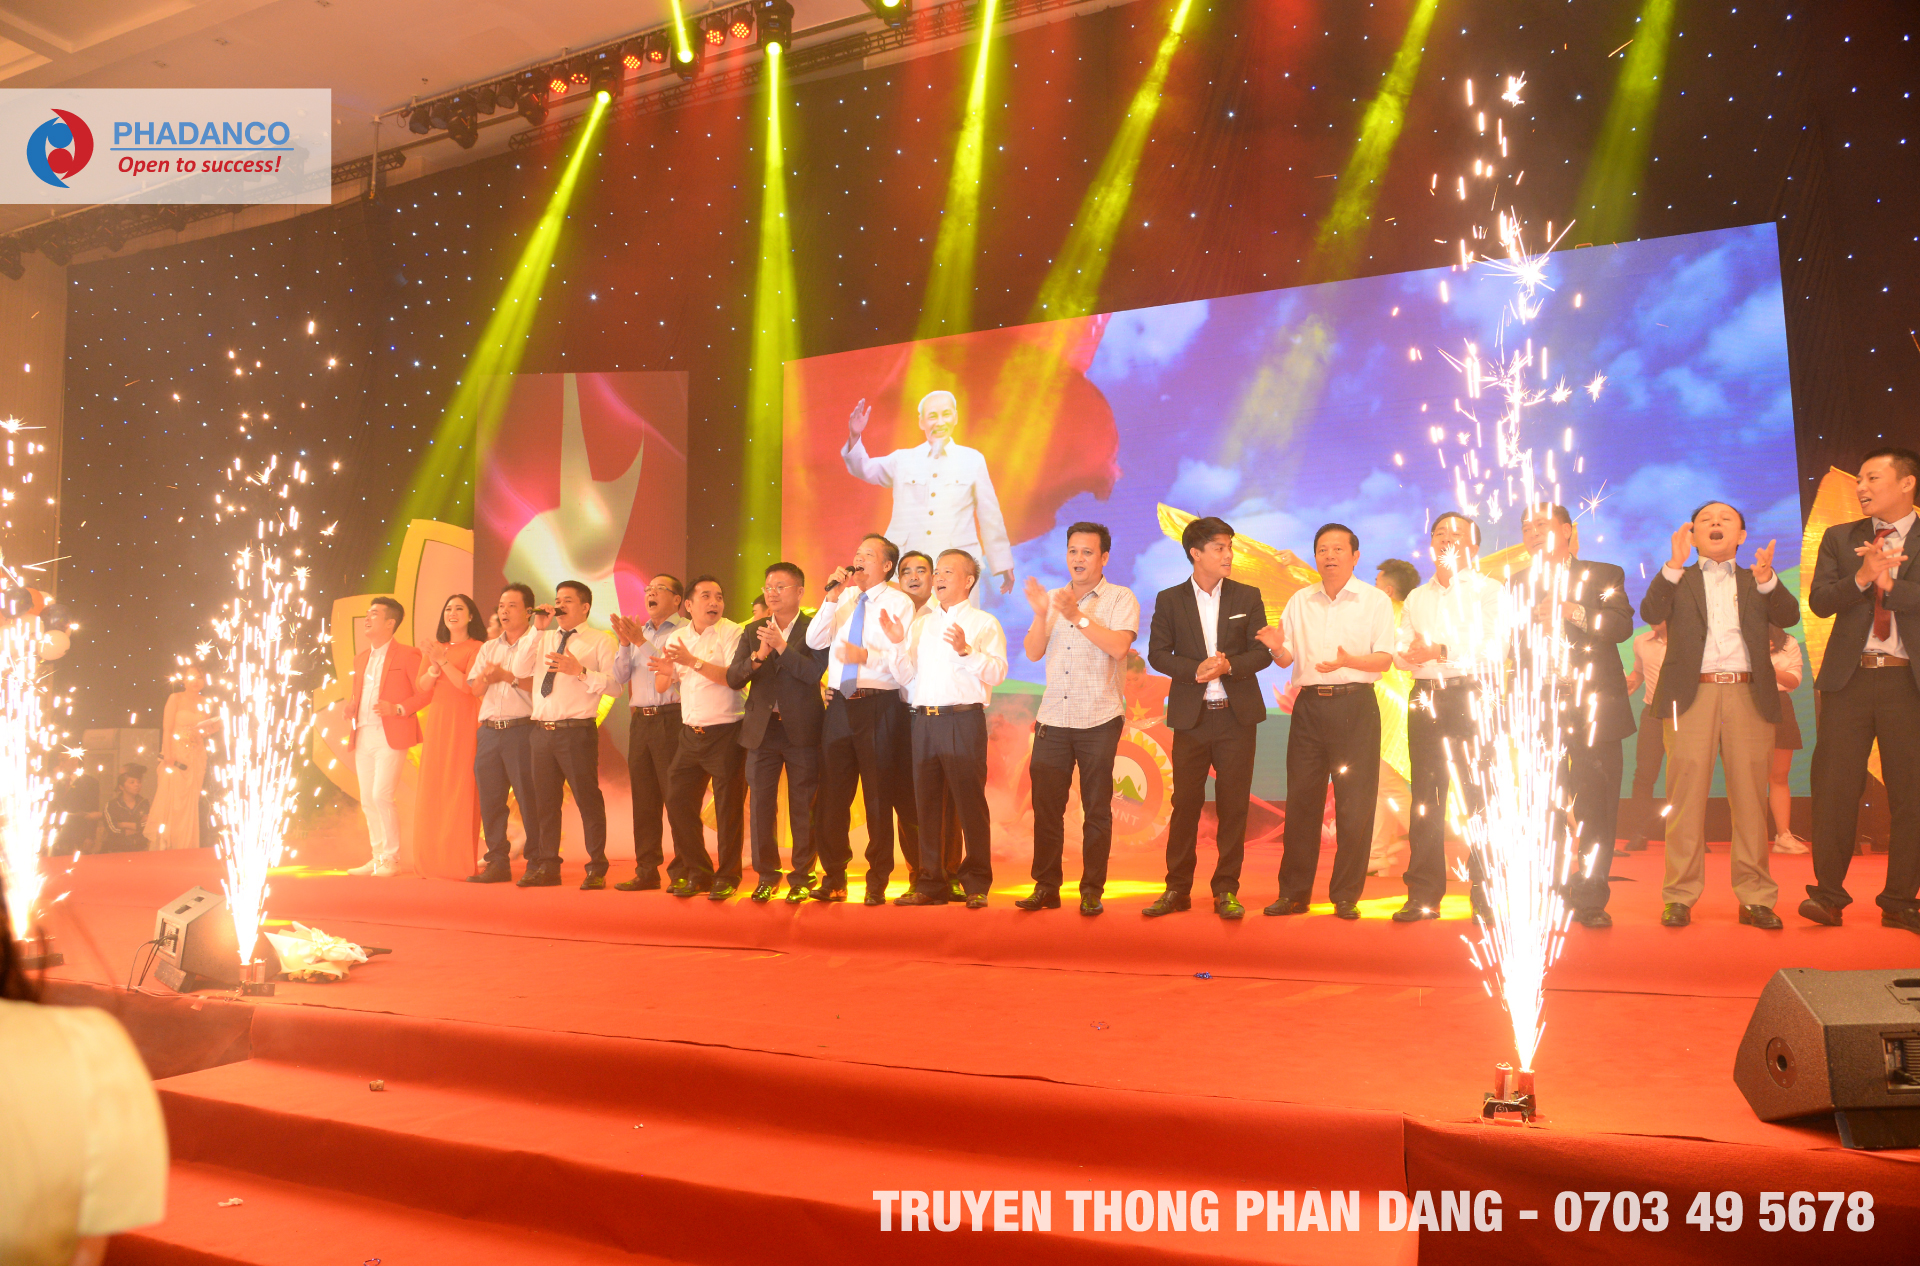 Truyền Thông Phan Đăng là đơn vị chuyên tổ chức sự kiện, event chuyên nghiệp